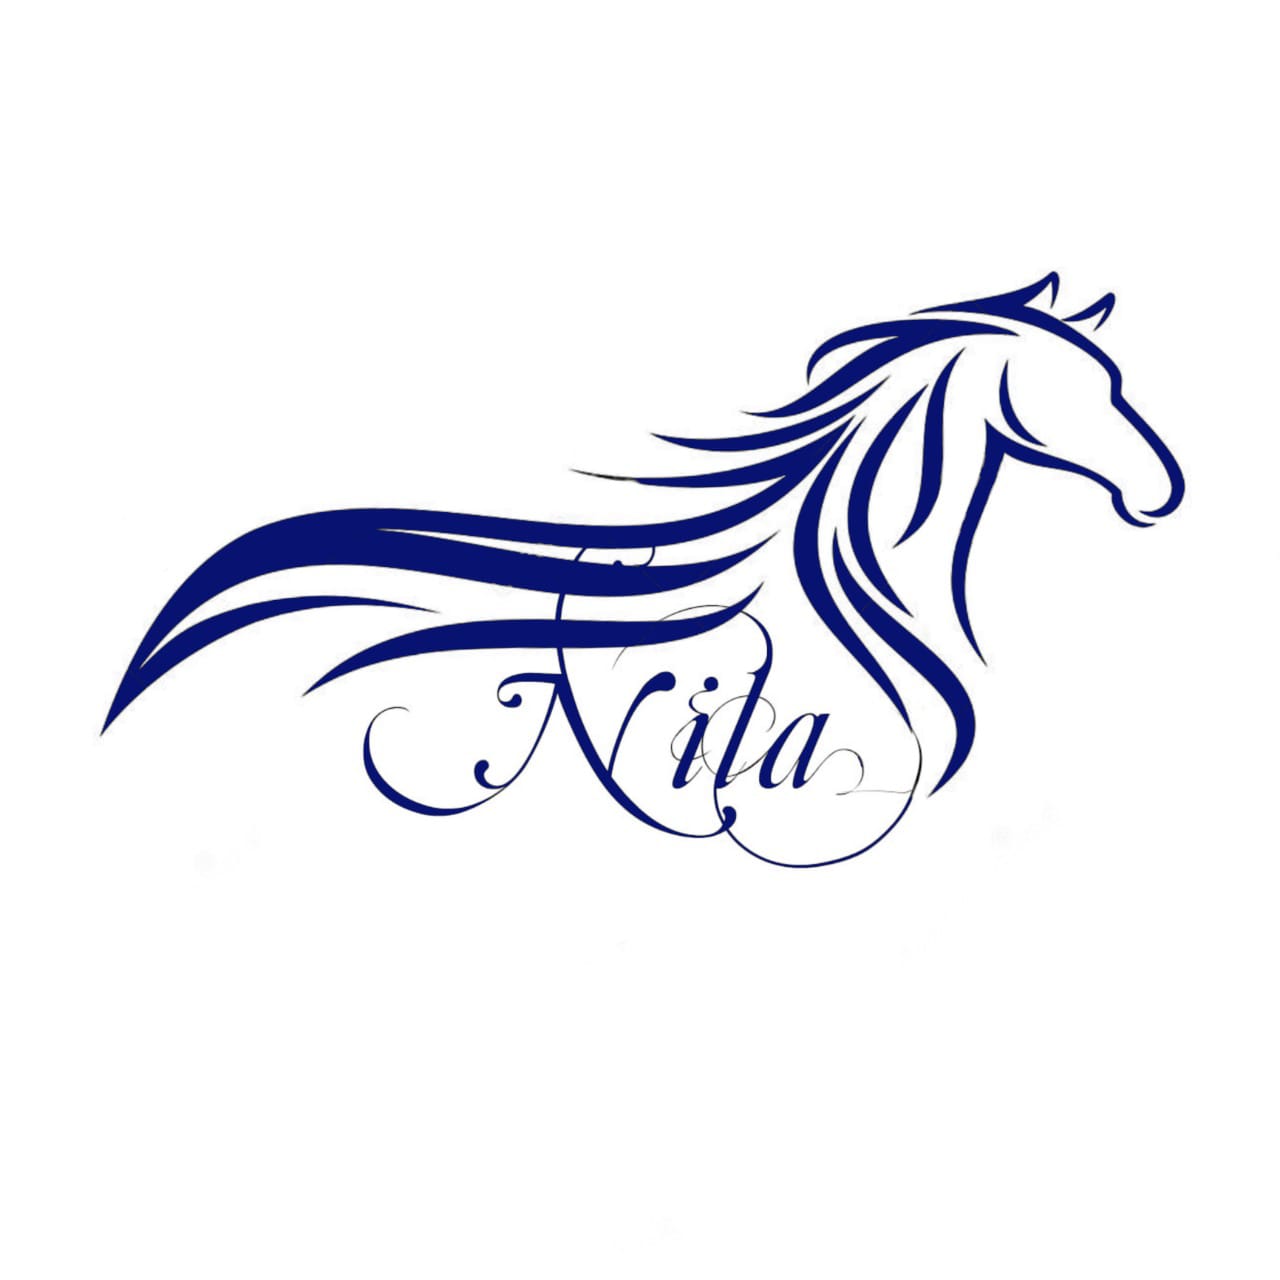 Horse riding logo